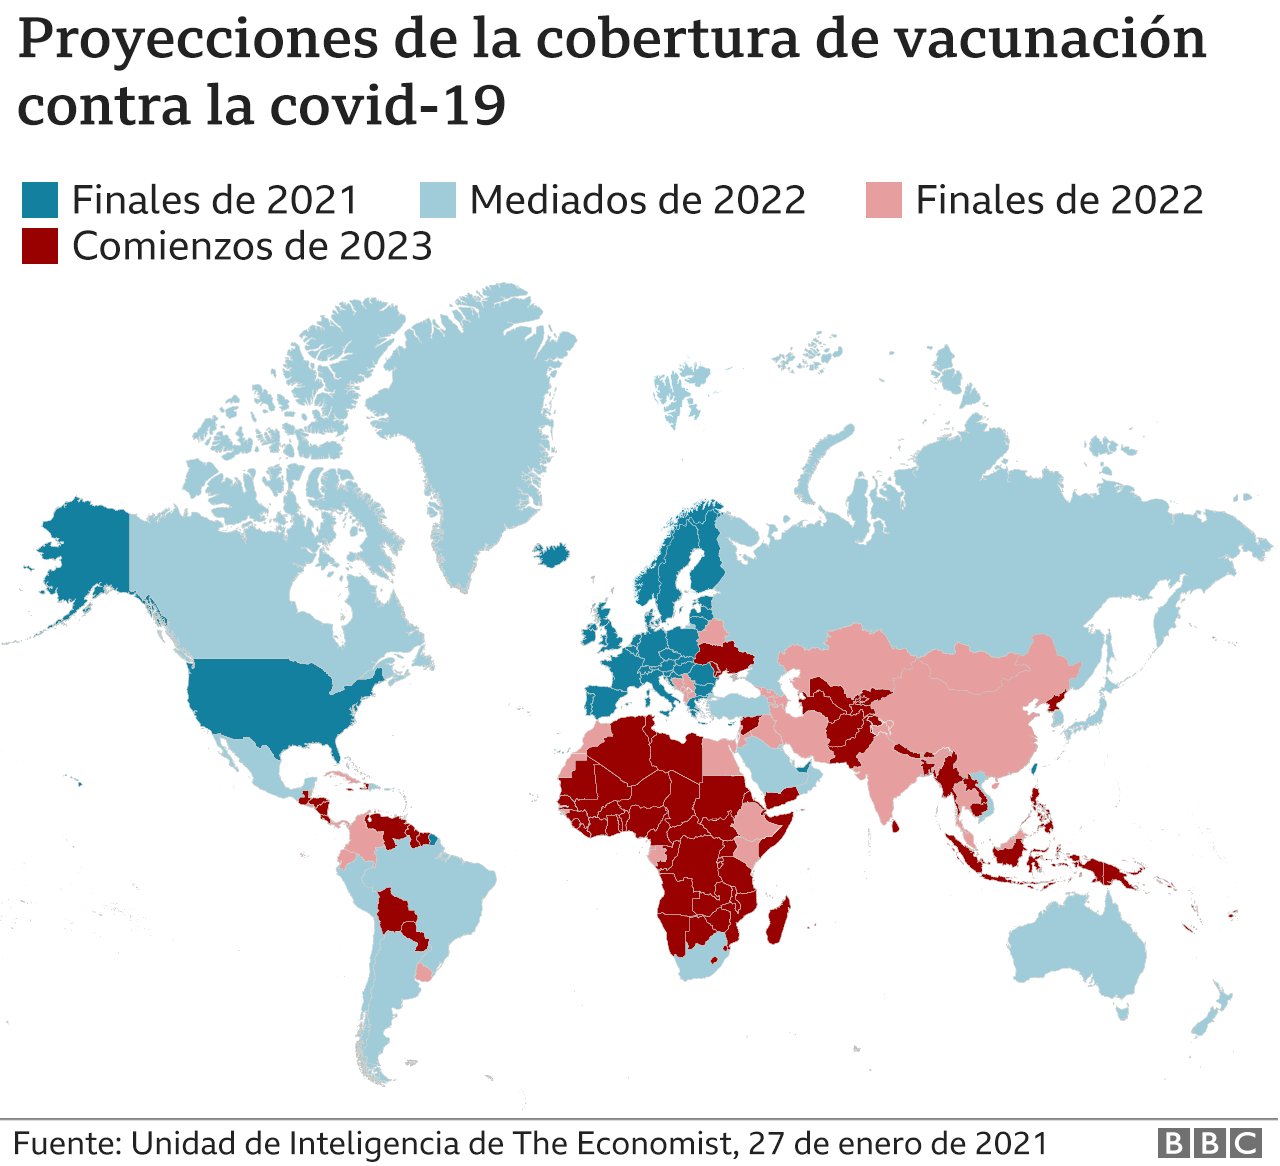 Proyecciones de la cobertura de vacunación hasta 2023